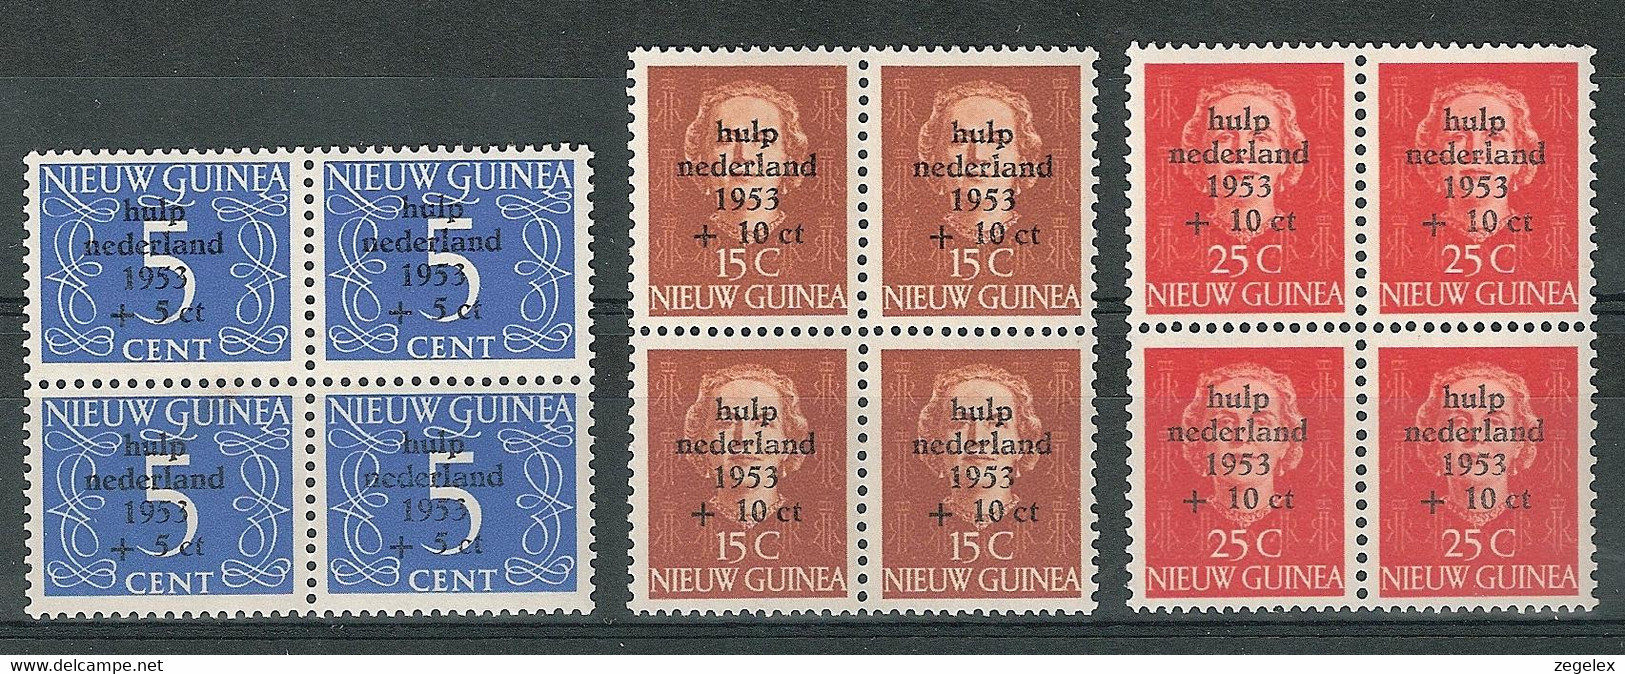 Nederlands Nieuw Guinea 1953, Surcharge "Watersnood", Blocks Of 4, Blokken Van 4 MNH**, Luxe Postfris - Nueva Guinea Holandesa